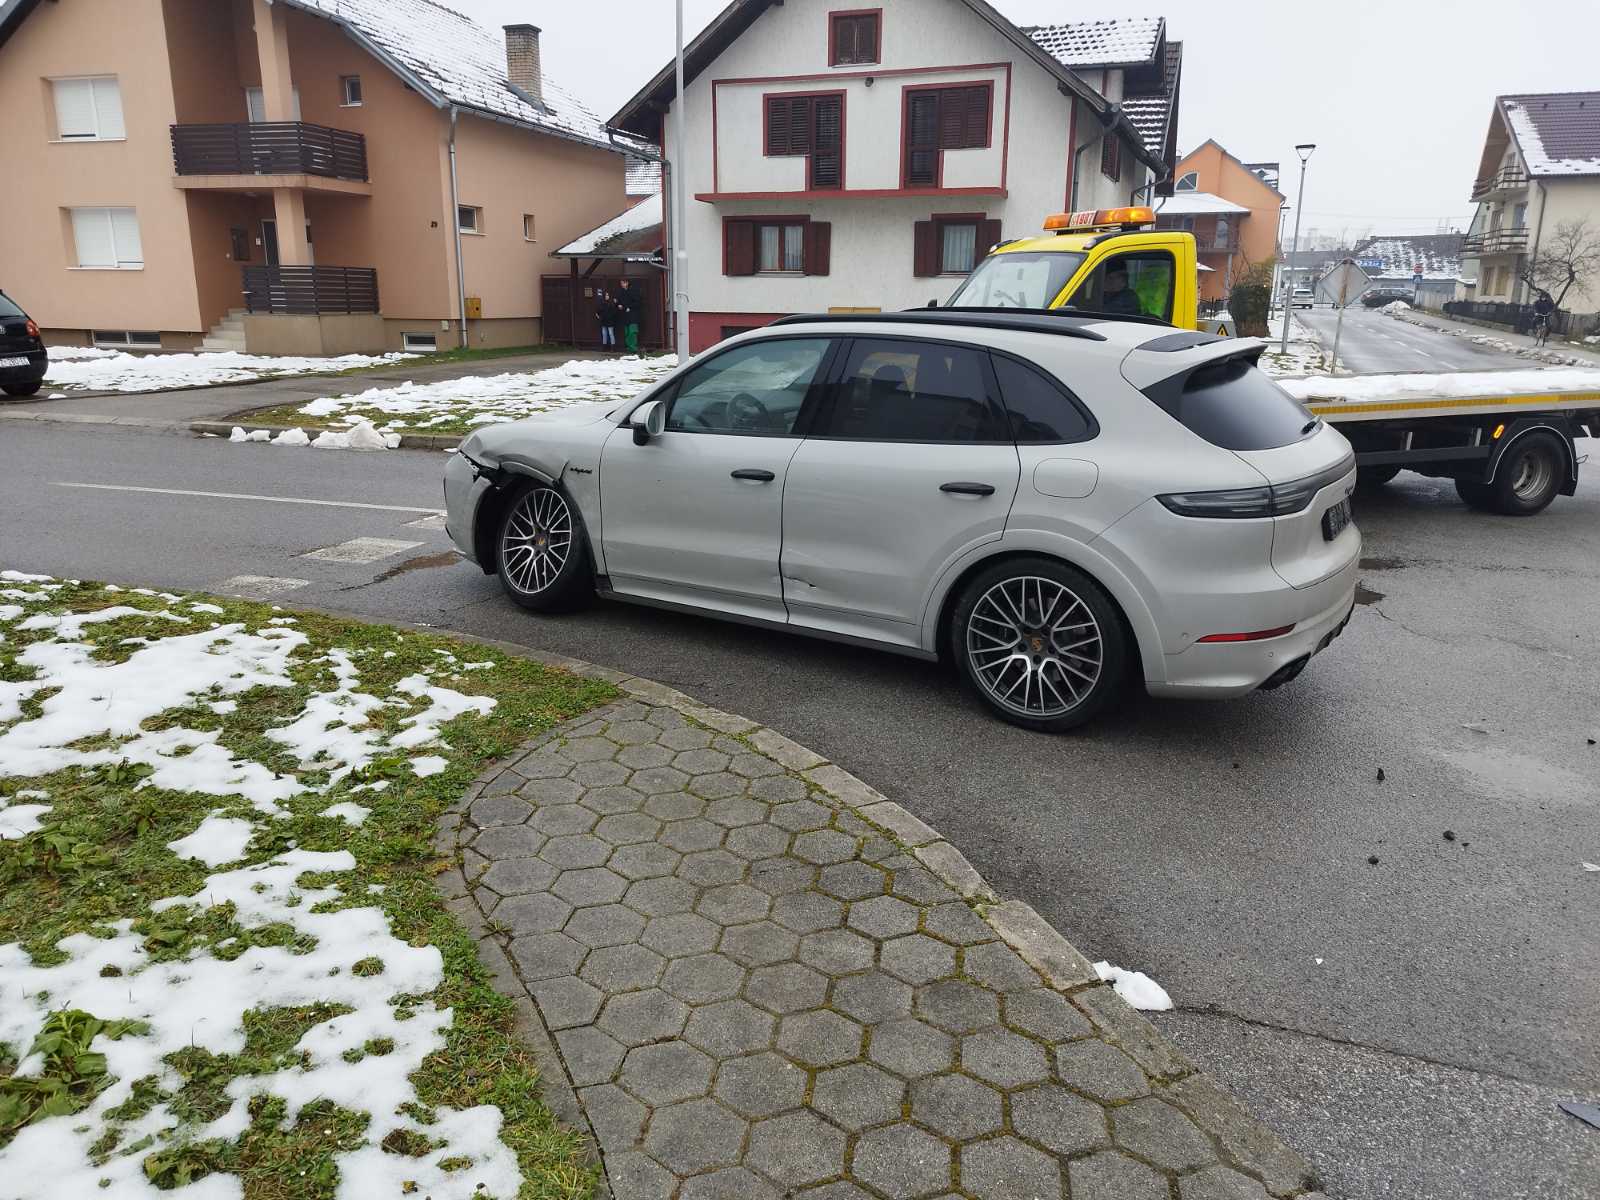 Požega.eu | Prometna nesreća u Požegi:  Prednost prolaska Porsche oduzeo Renaultu